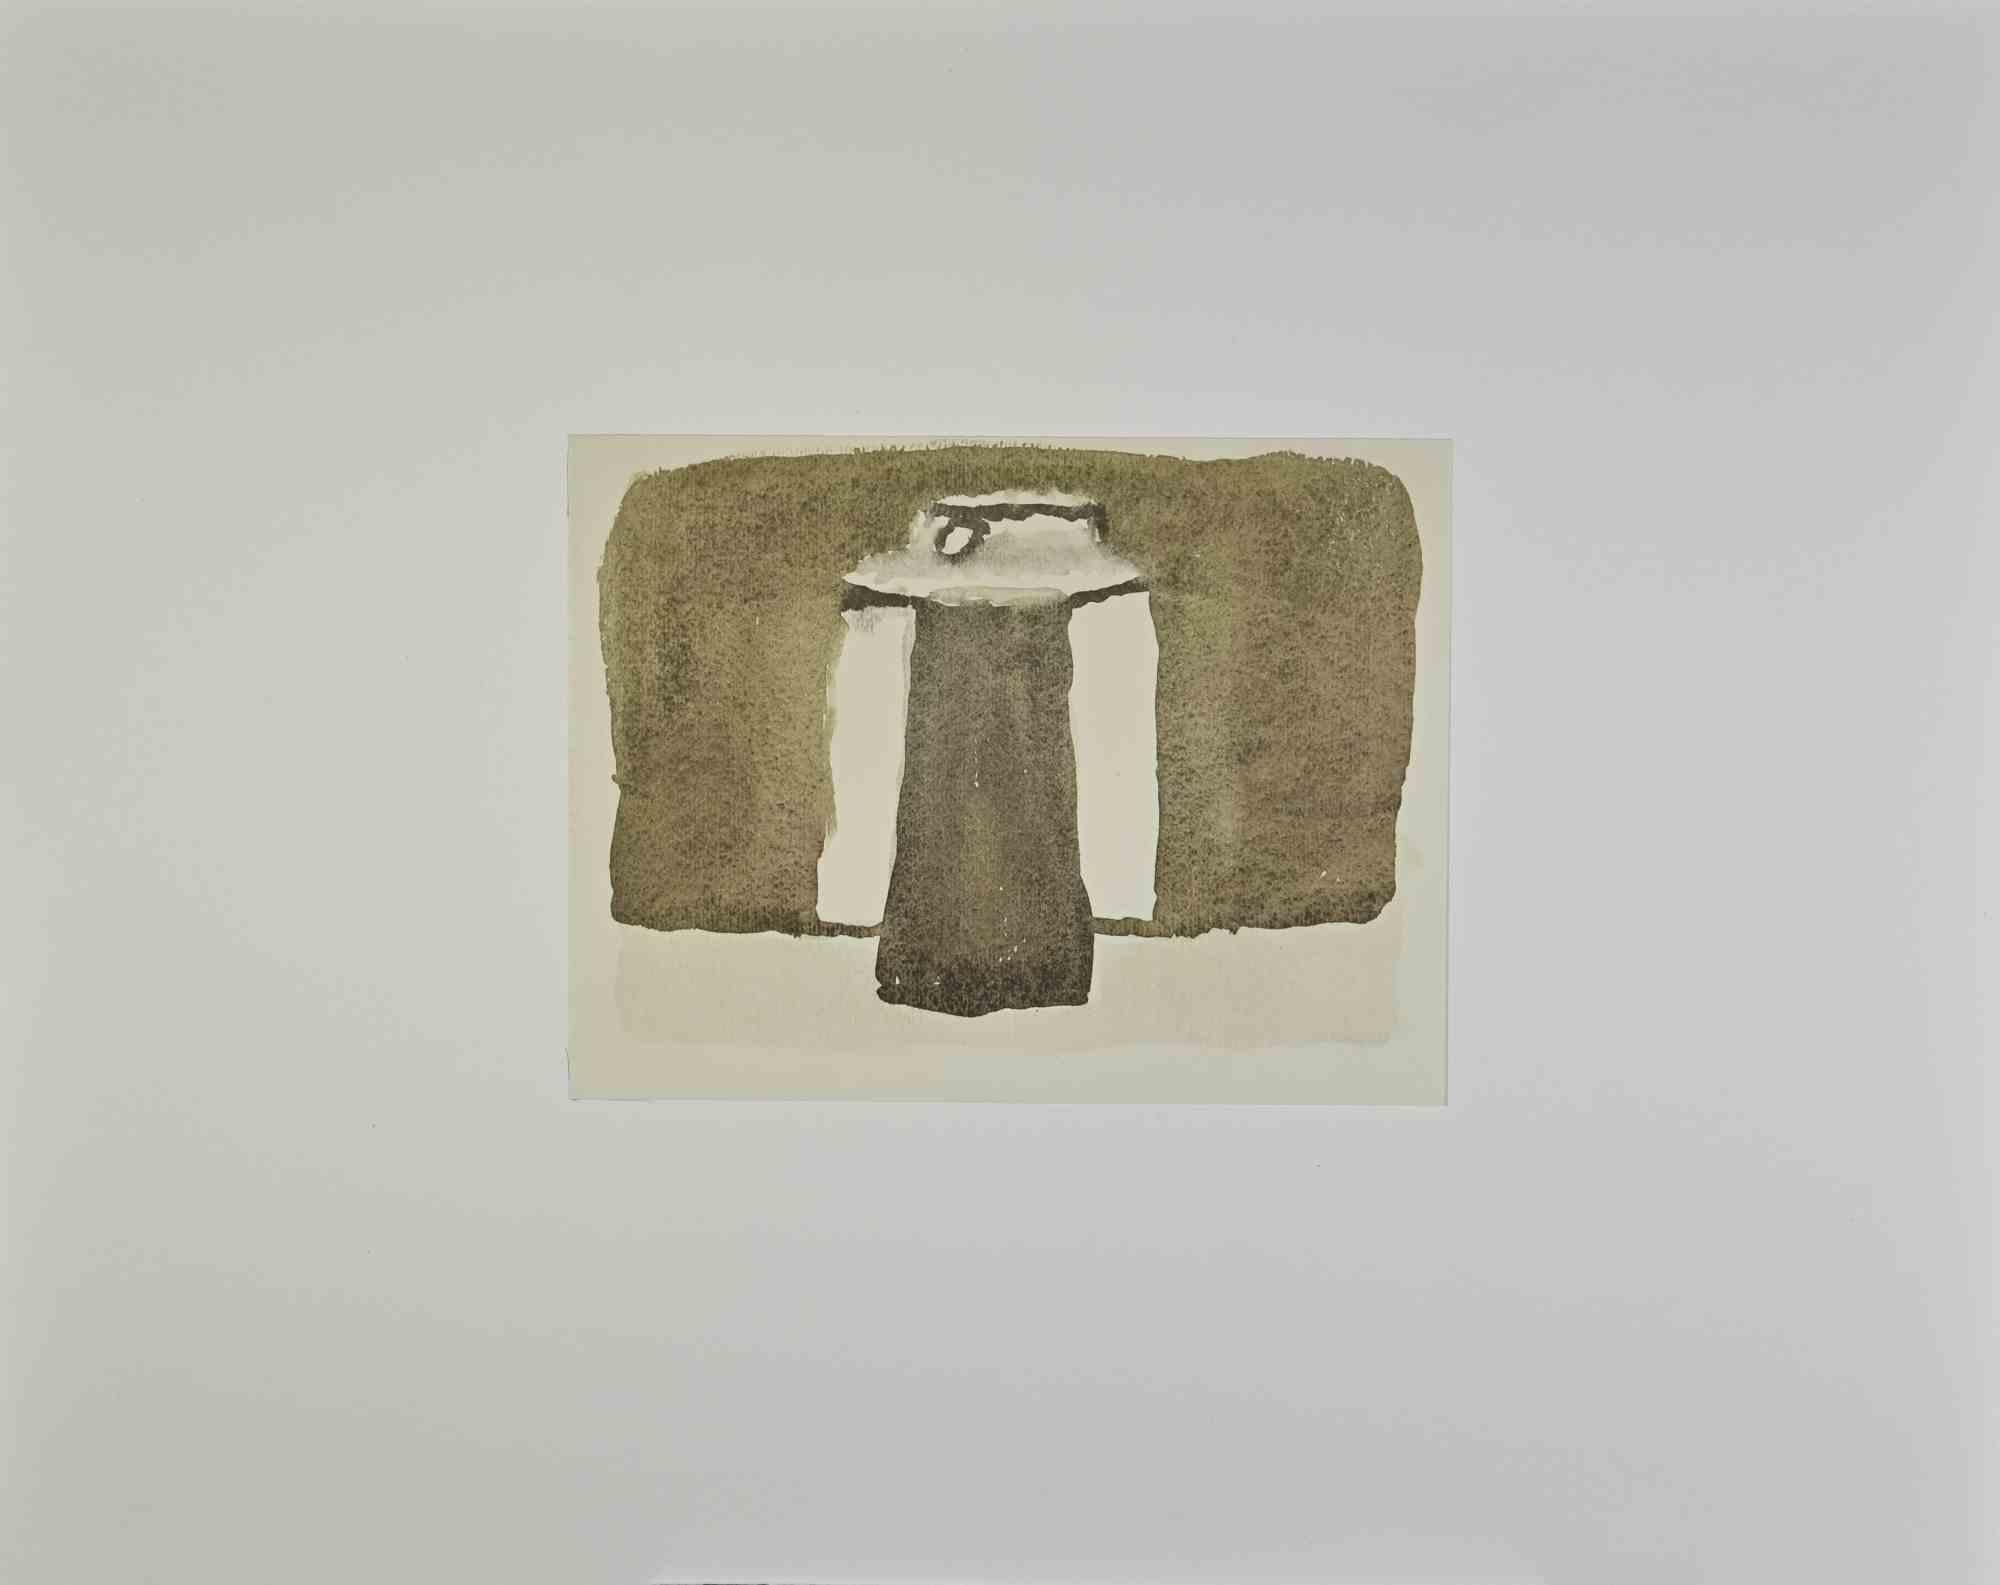 Still Life ist ein Offsetdruck, der das Originalaquarell von Giorgio Morandi reproduziert.

Die Signatur und das Datum des Künstlers sind perfekt auf der Platte wiedergegeben. Bildabmessungen: 16 x 21 cm

Aus dem Band "L'Opera grafica di Giorgio